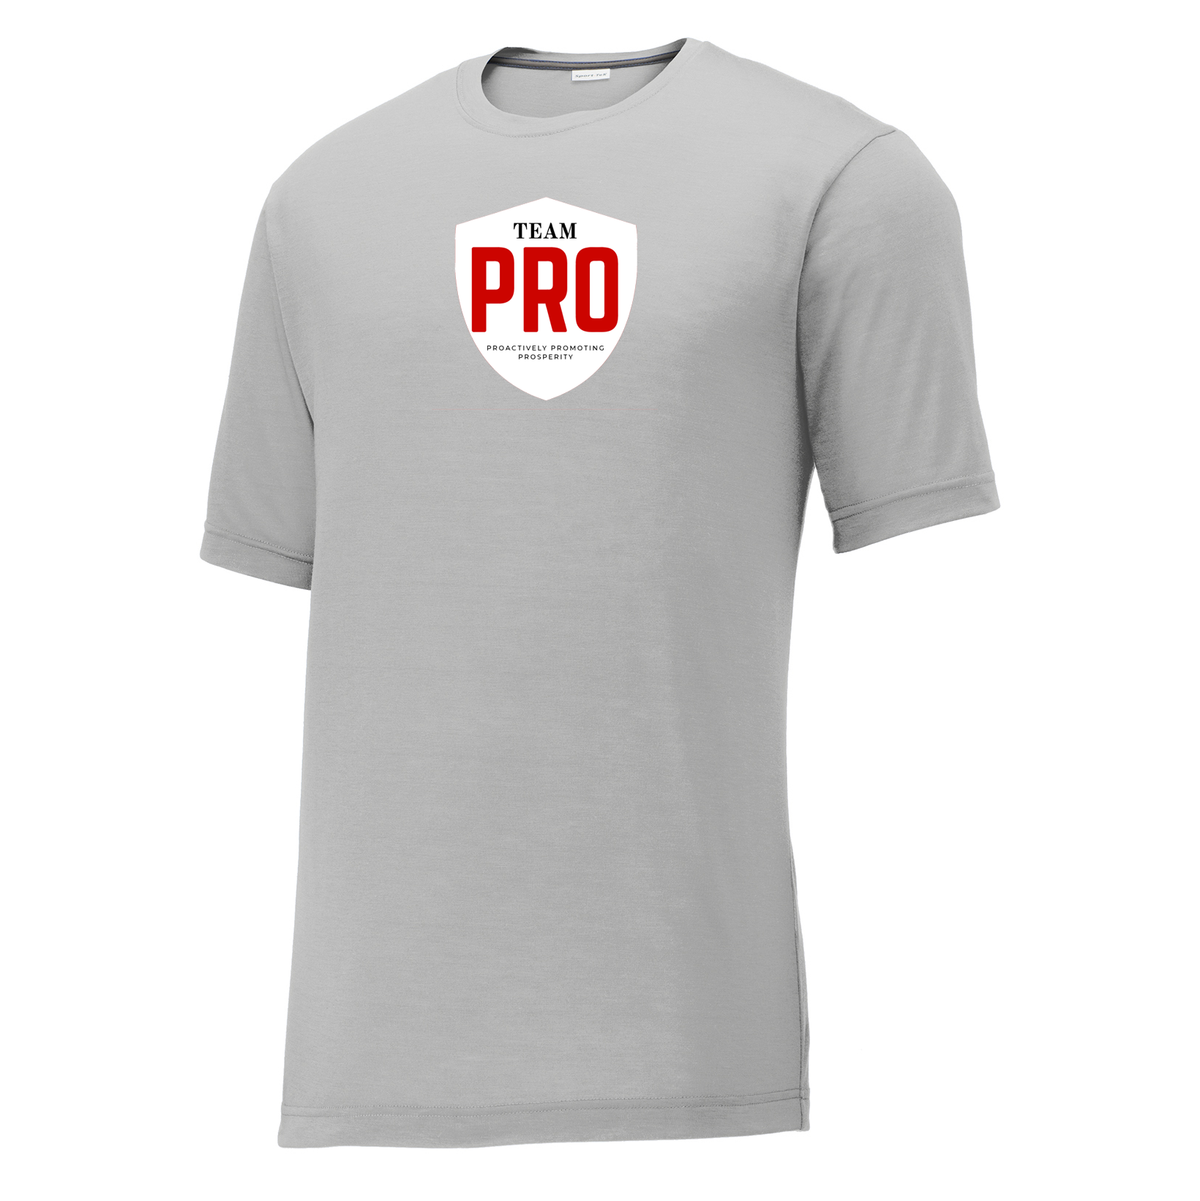 PRI Sales CottonTouch Performance T-Shirt